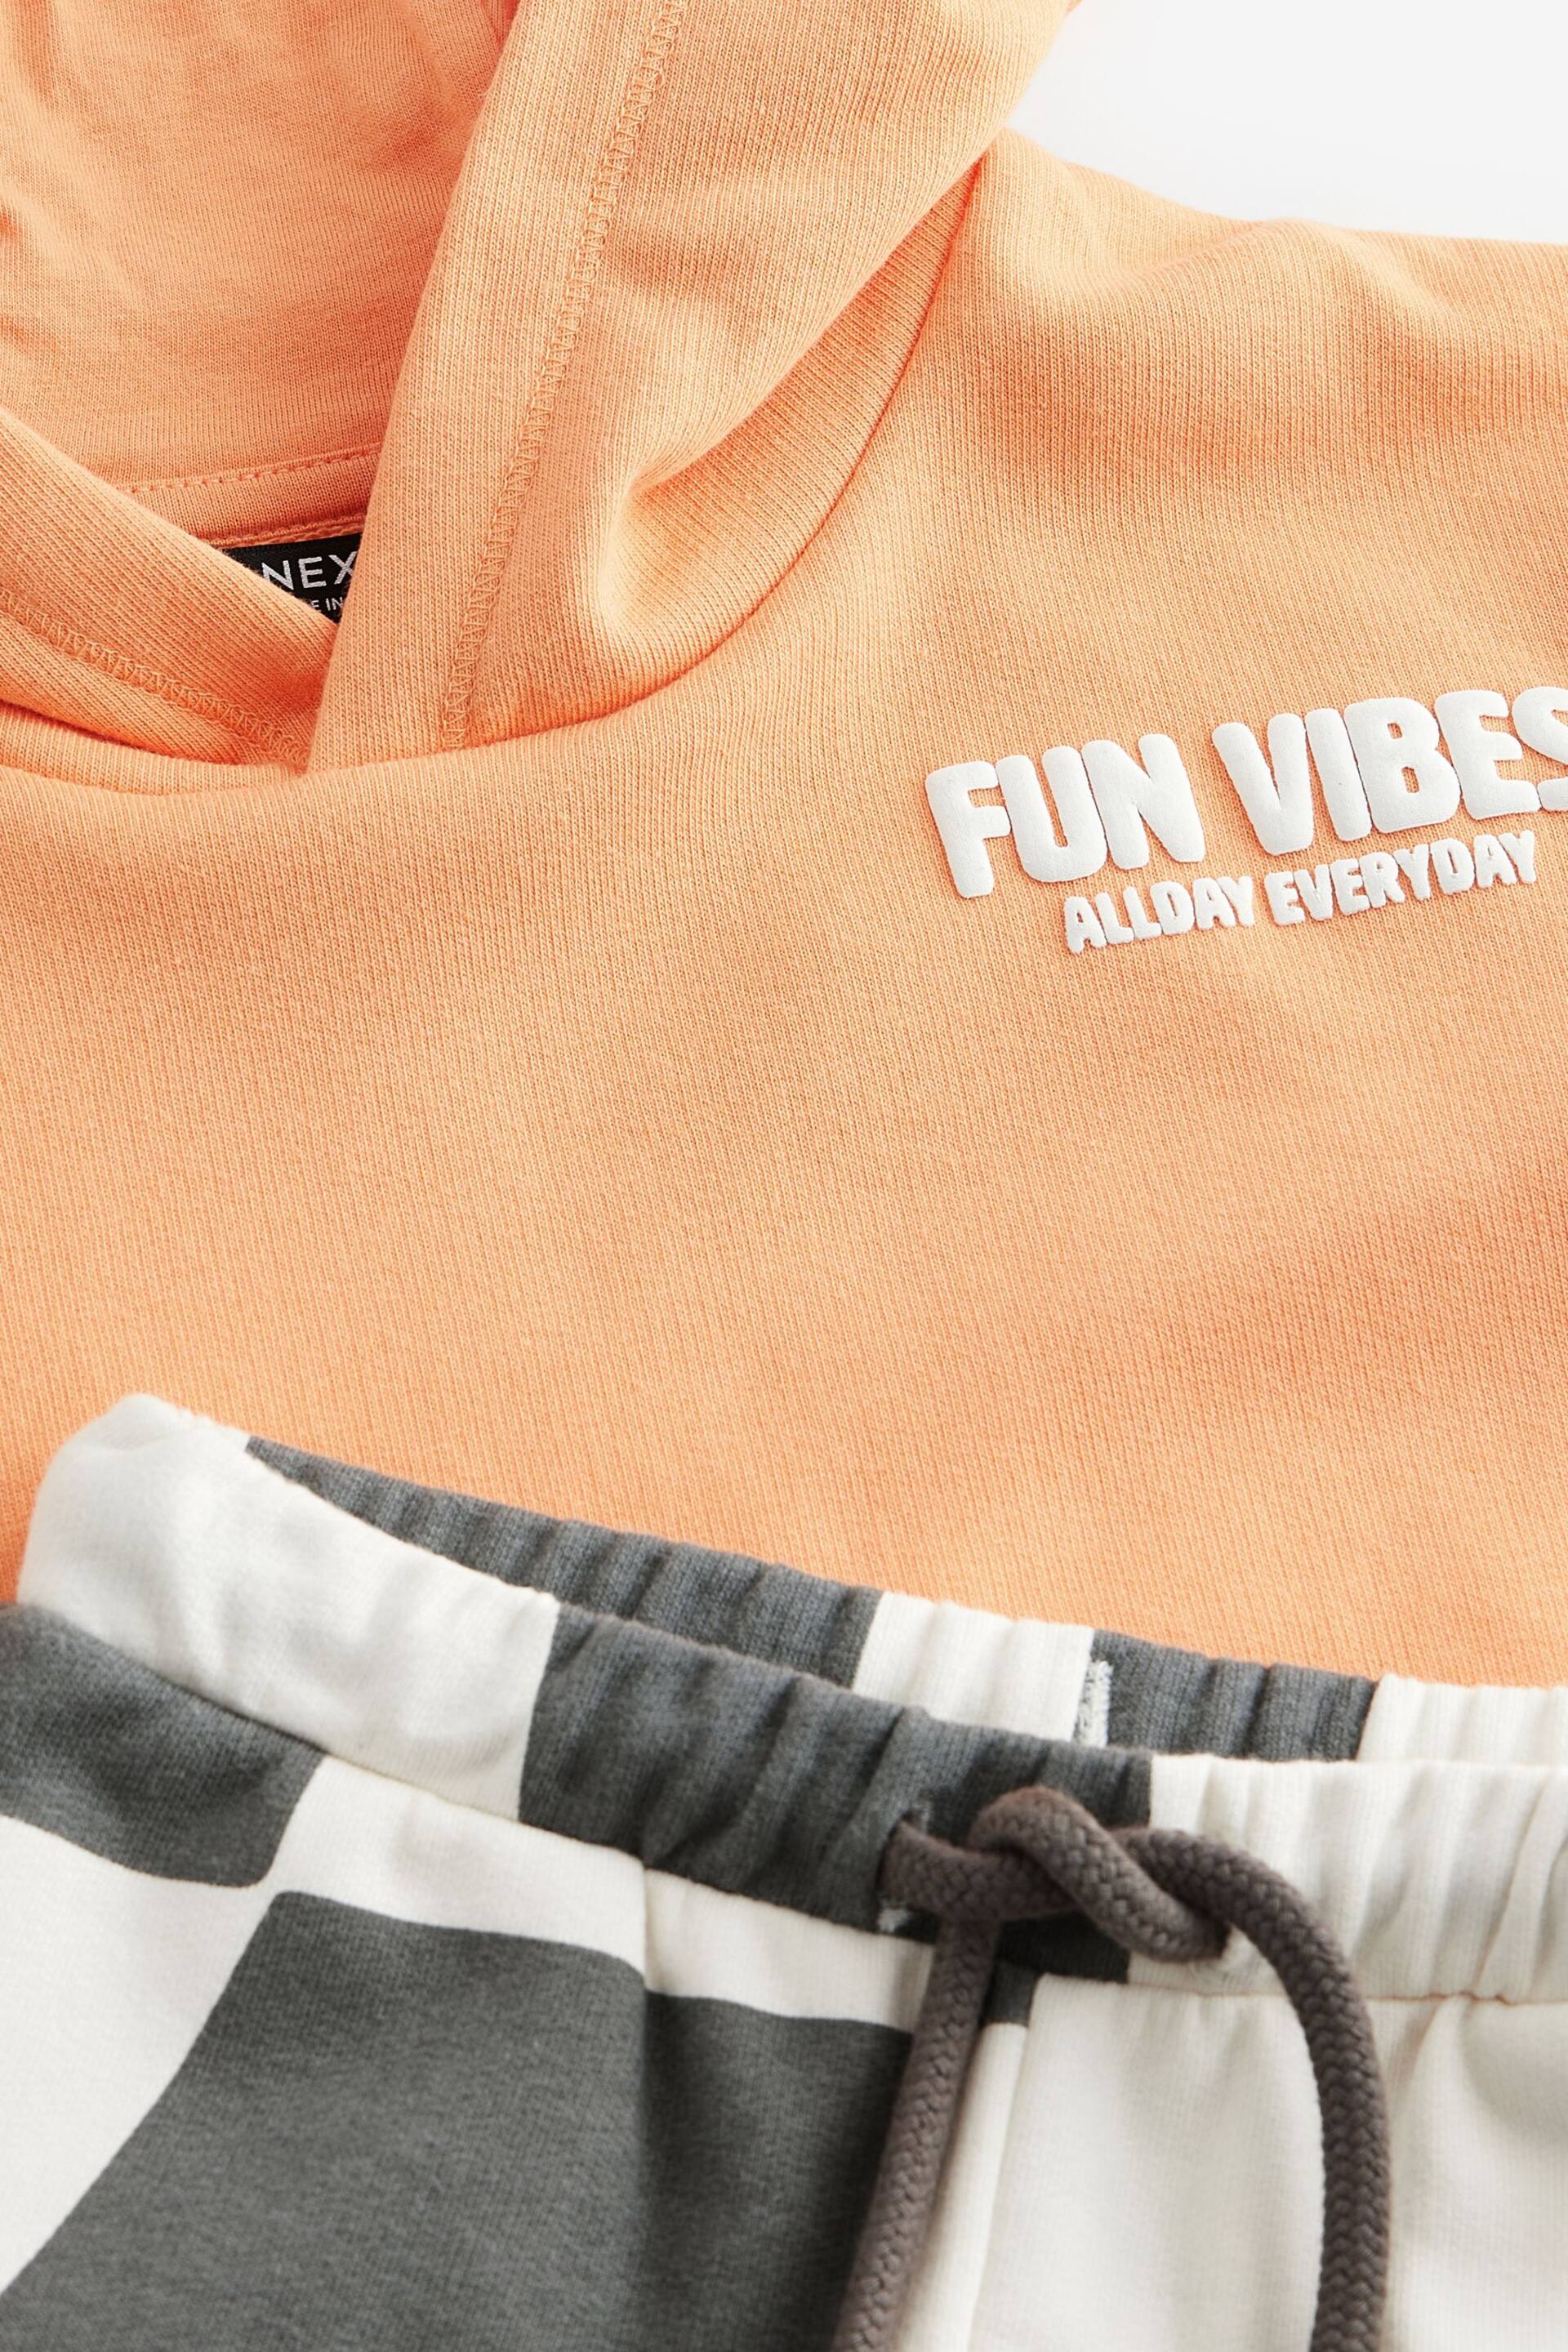 Orange Short Sleeve Hooded Sweatshirt and Shorts Set (3mths-7yrs) - Image 5 of 5